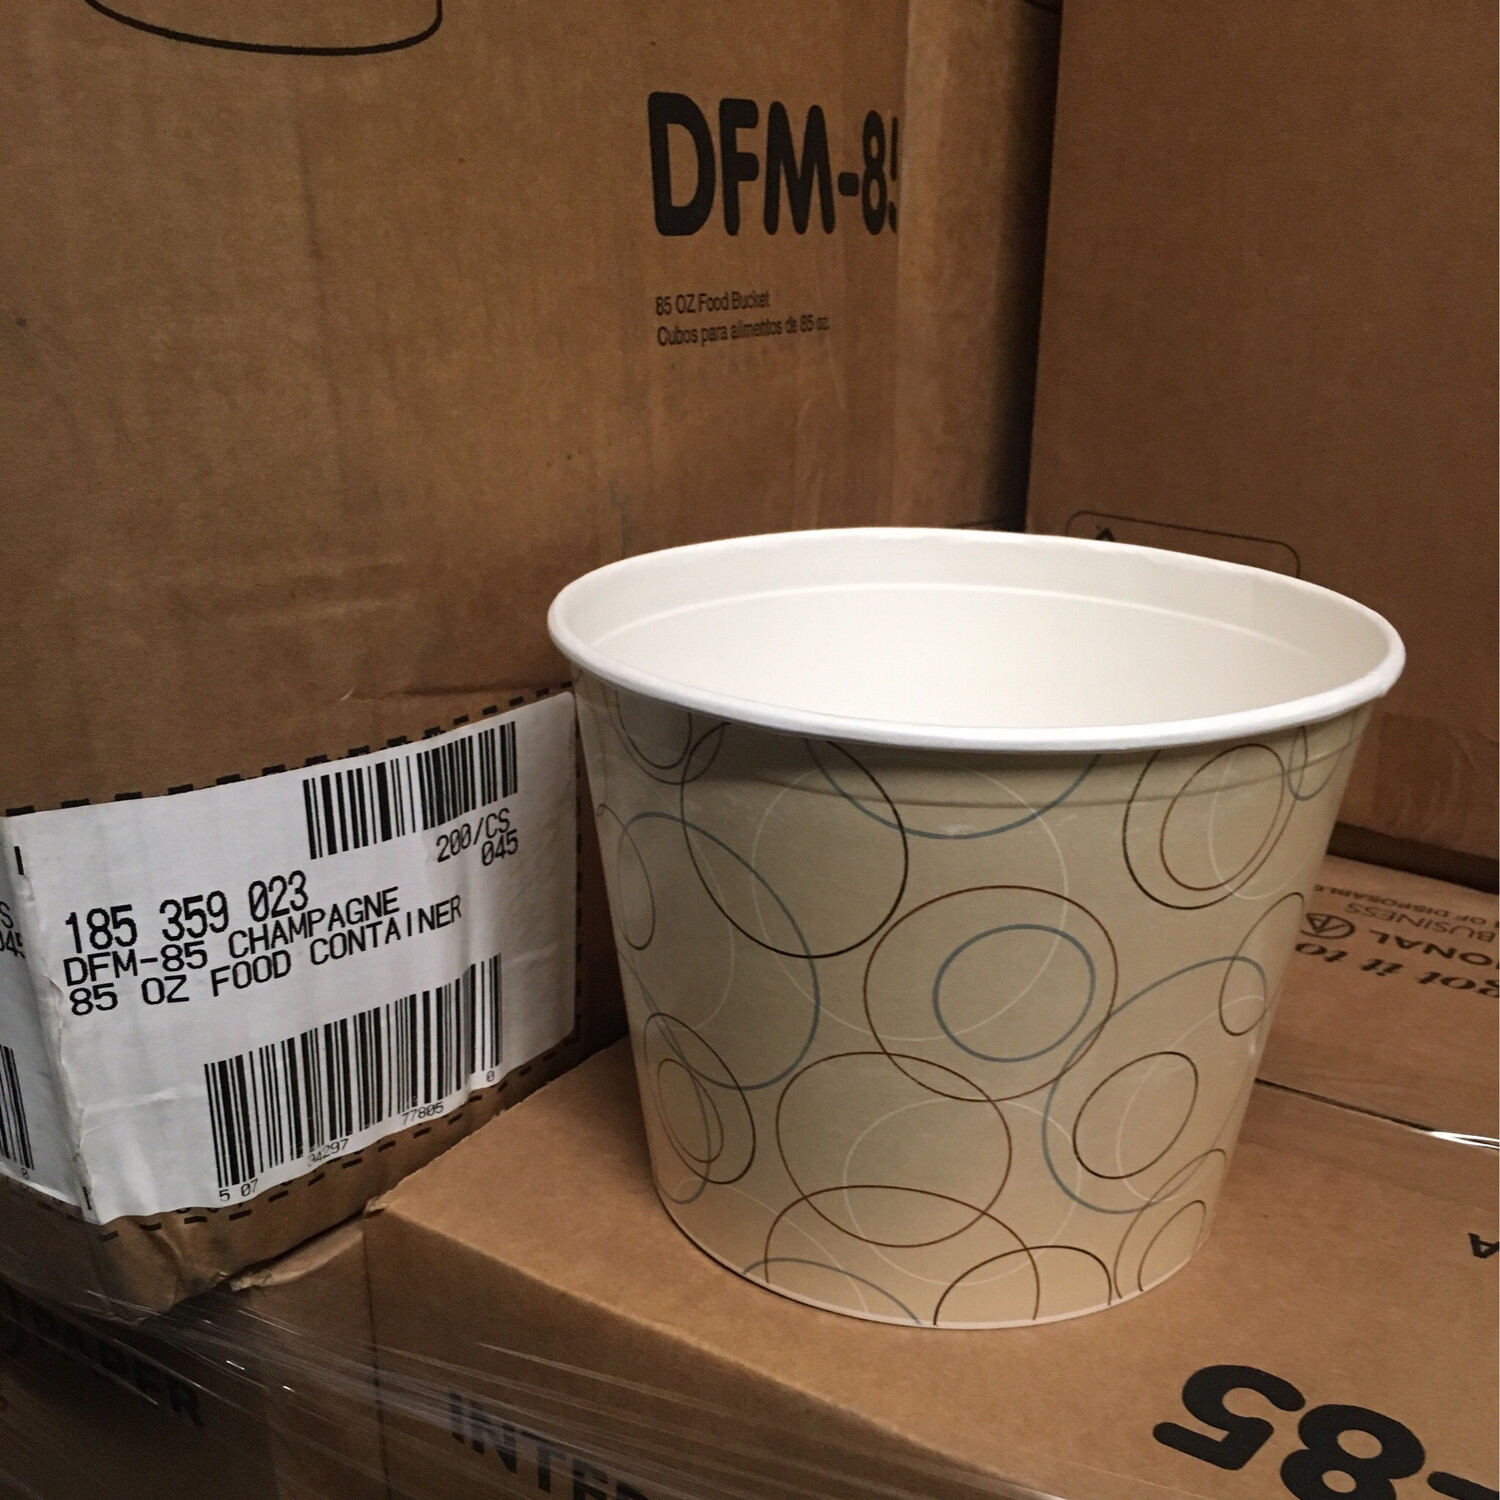 DFM-85 85 ounce Food Bucket 200/cs